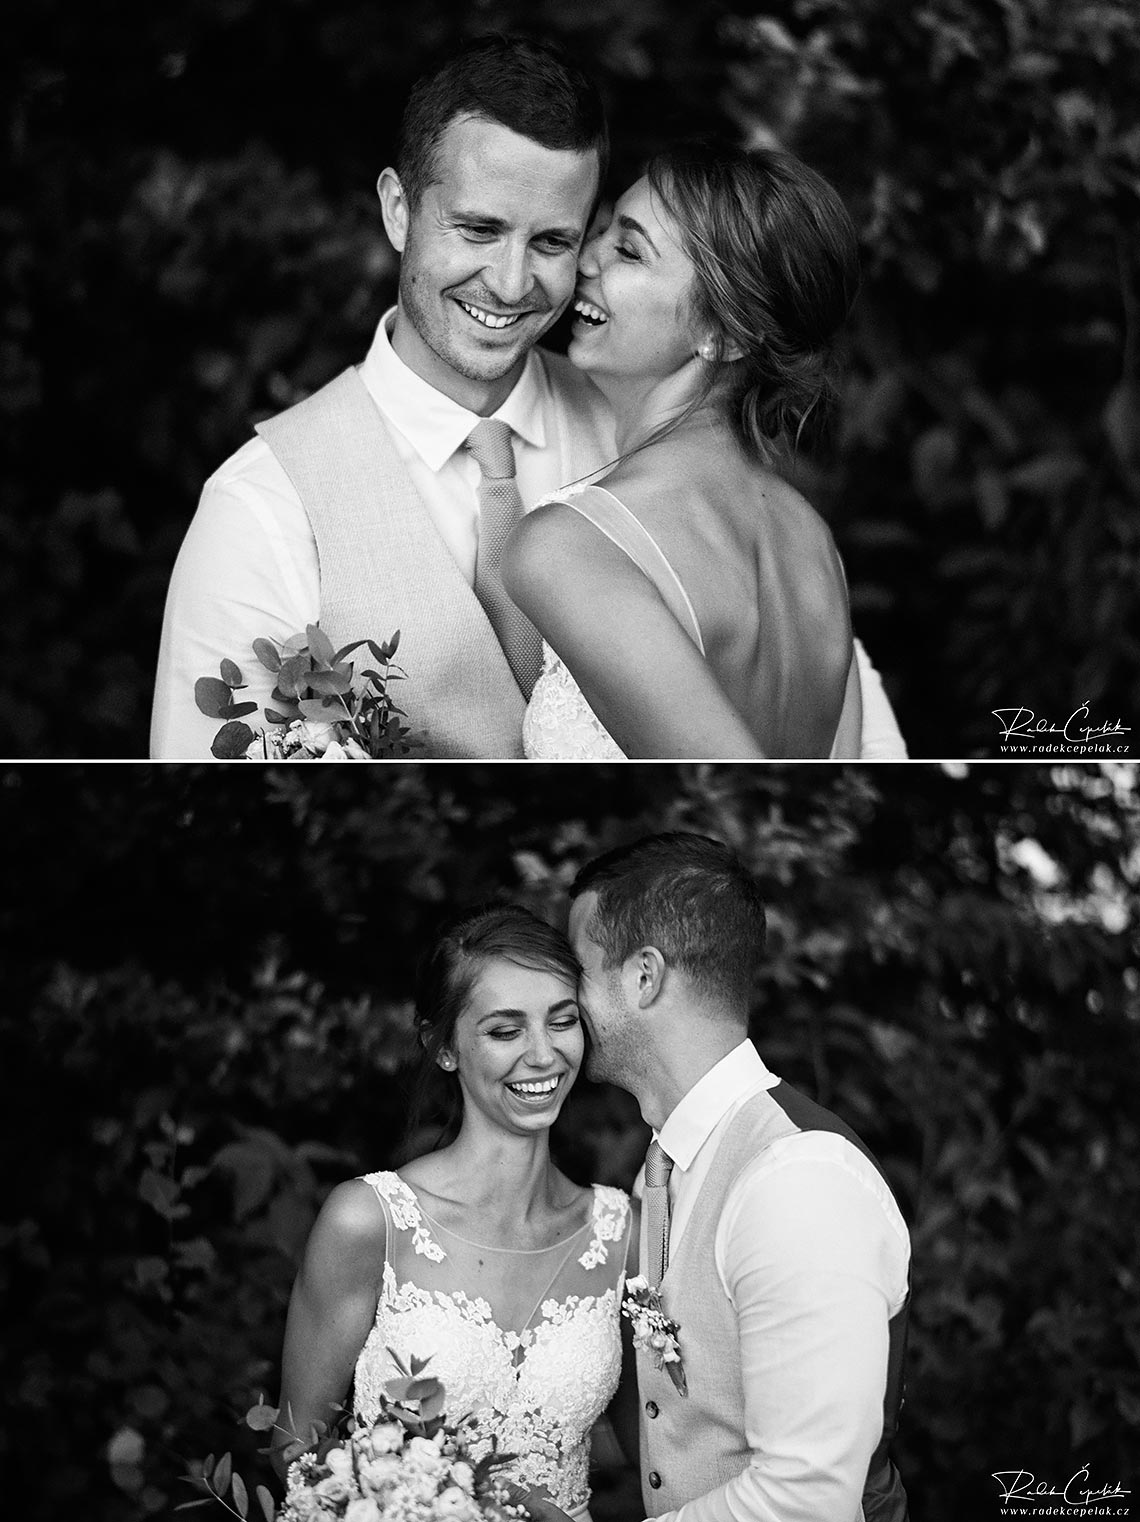 černobílé svatební fotografie novomanželů v přírodě